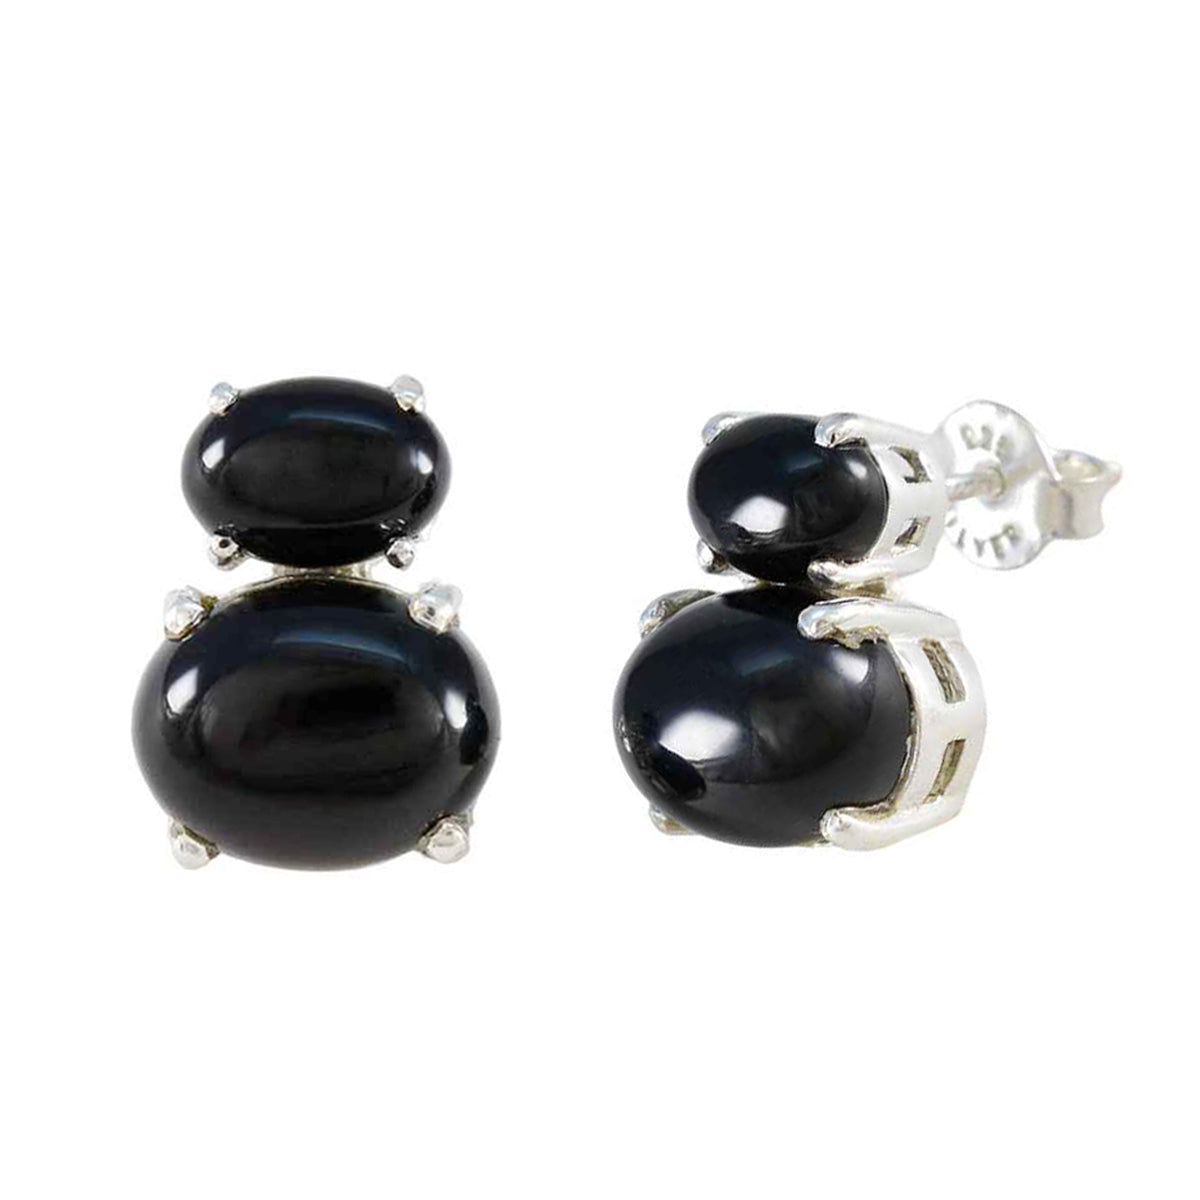 Riyo – boucle d'oreille décorative en argent sterling pour sœur, onyx noir, réglage de la lunette, boucle d'oreille noire